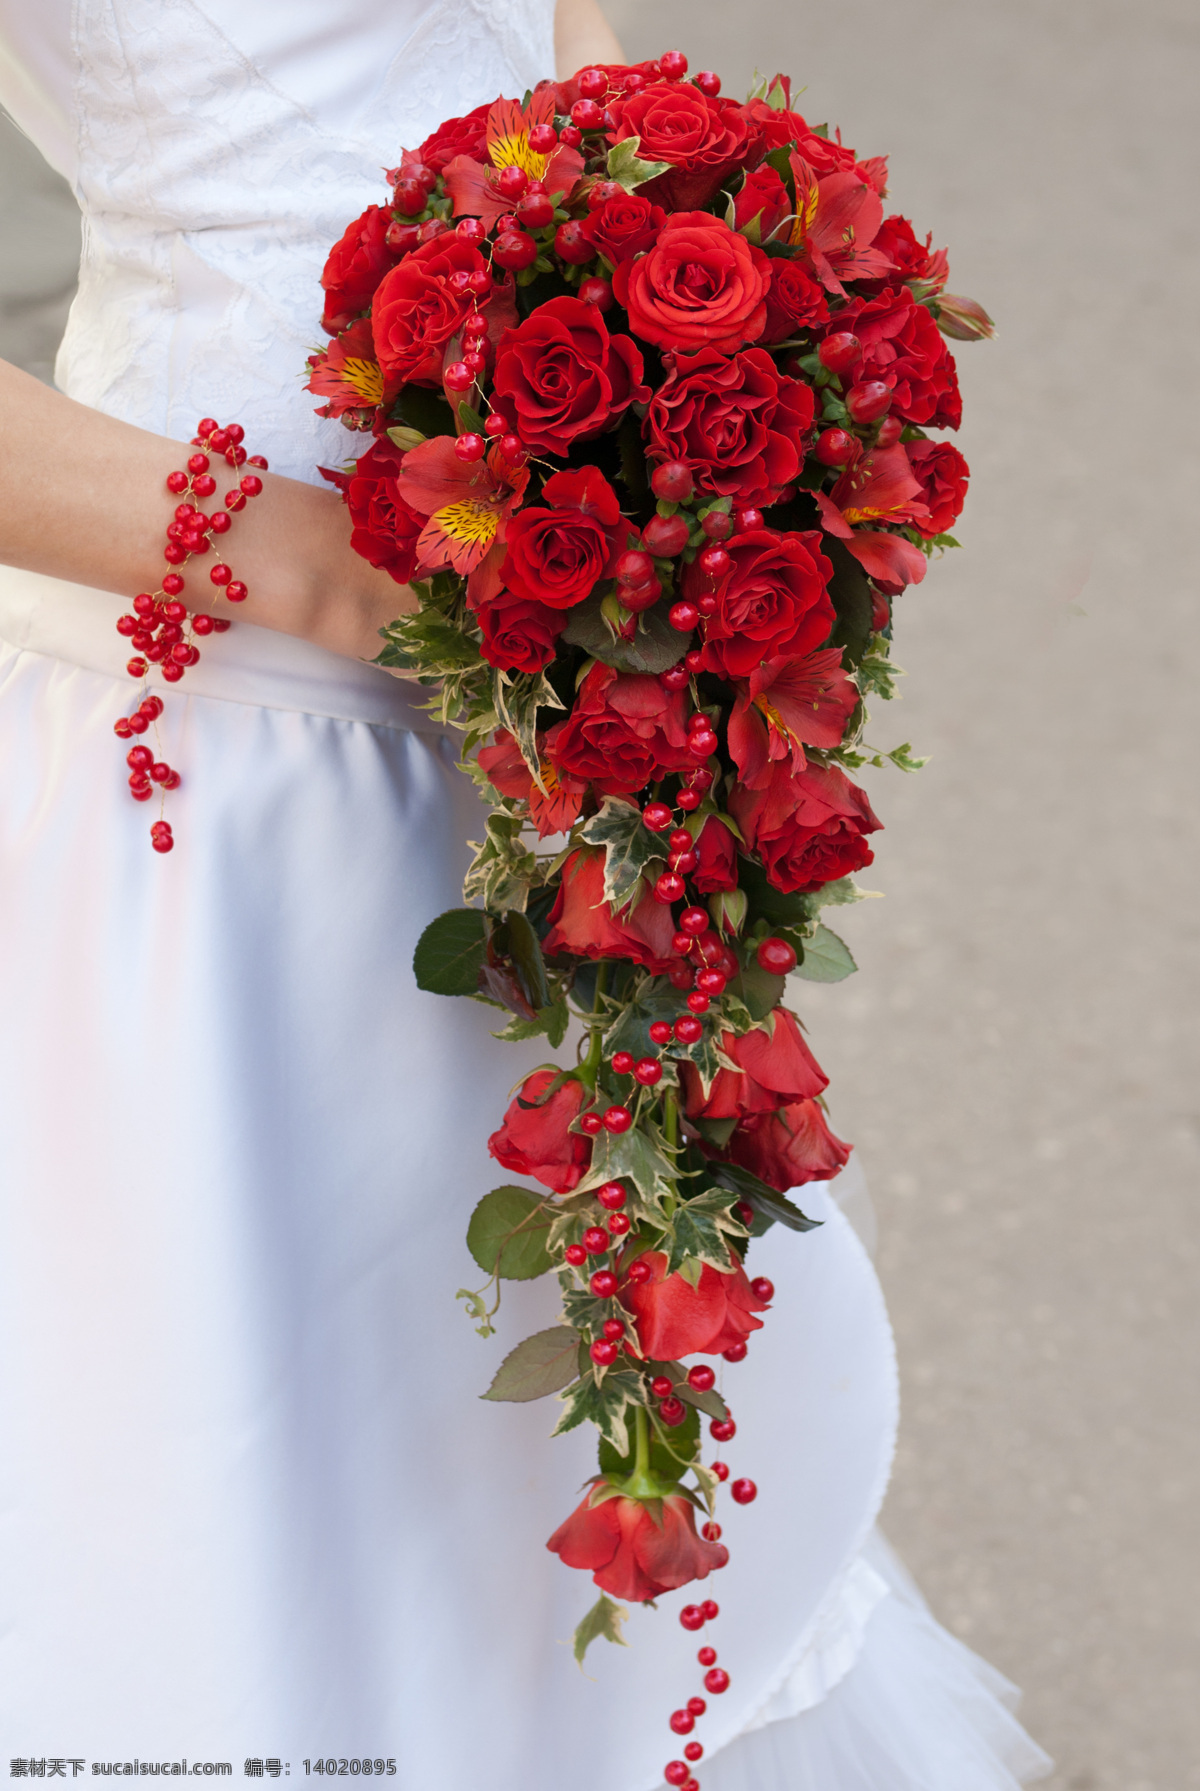 手捧花 花球 结婚 幸福 玫瑰 婚礼 新娘 捧花 红玫瑰 花束 玫瑰花束 生活素材摄影 生活素材 生活百科